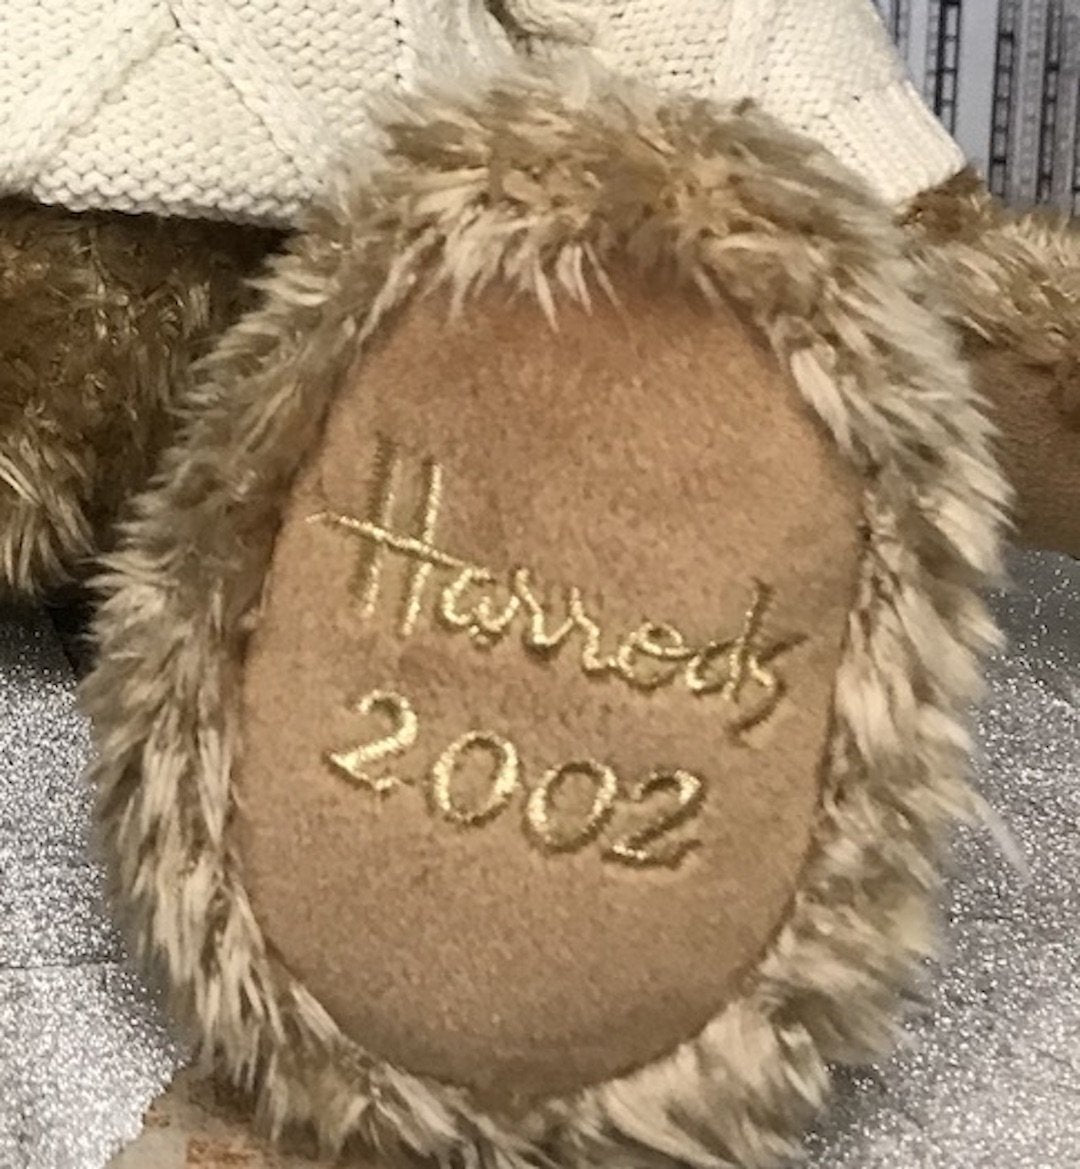 Harrods 2002 Christmas Teddy Bear